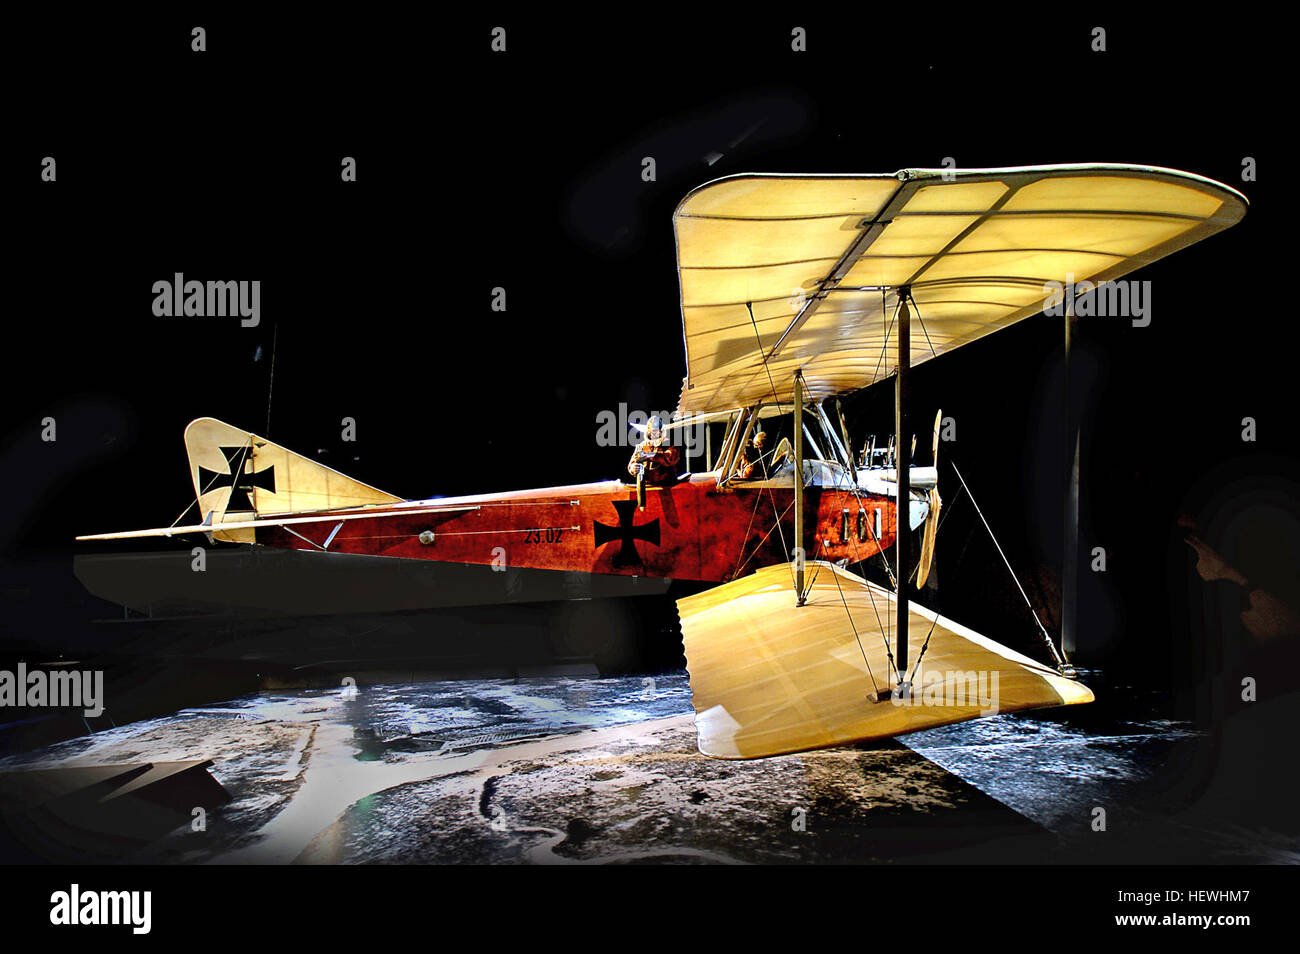 Entworfen von Ernst Heinkel anhand seiner 1913 Albatros B.I, war die B.II das Flugzeug, die die Aufmerksamkeit der Welt den Flugzeughersteller Albatros Flugzeugwerke gebracht.  Die B.II hatte eine kürzere Spannweite als die B.I und verwendet eine Vielzahl von Motoren bis zu 89 kW (120 PS). Im Jahr 1914 stellen sie einen Höhenrekord von 4.500 m (14.800 ft). Die Sitzordnung war nicht ideal; der Pilot belegt das hintere Cockpit, der Beobachter saß vorne über die Flügel, die seiner Ansicht nach unten reduziert, während die hervorstehenden Motorblock der Blick über die Nase fast vollständig verdeckt. Wenn die Albatros entwickelt die ar Stockfoto